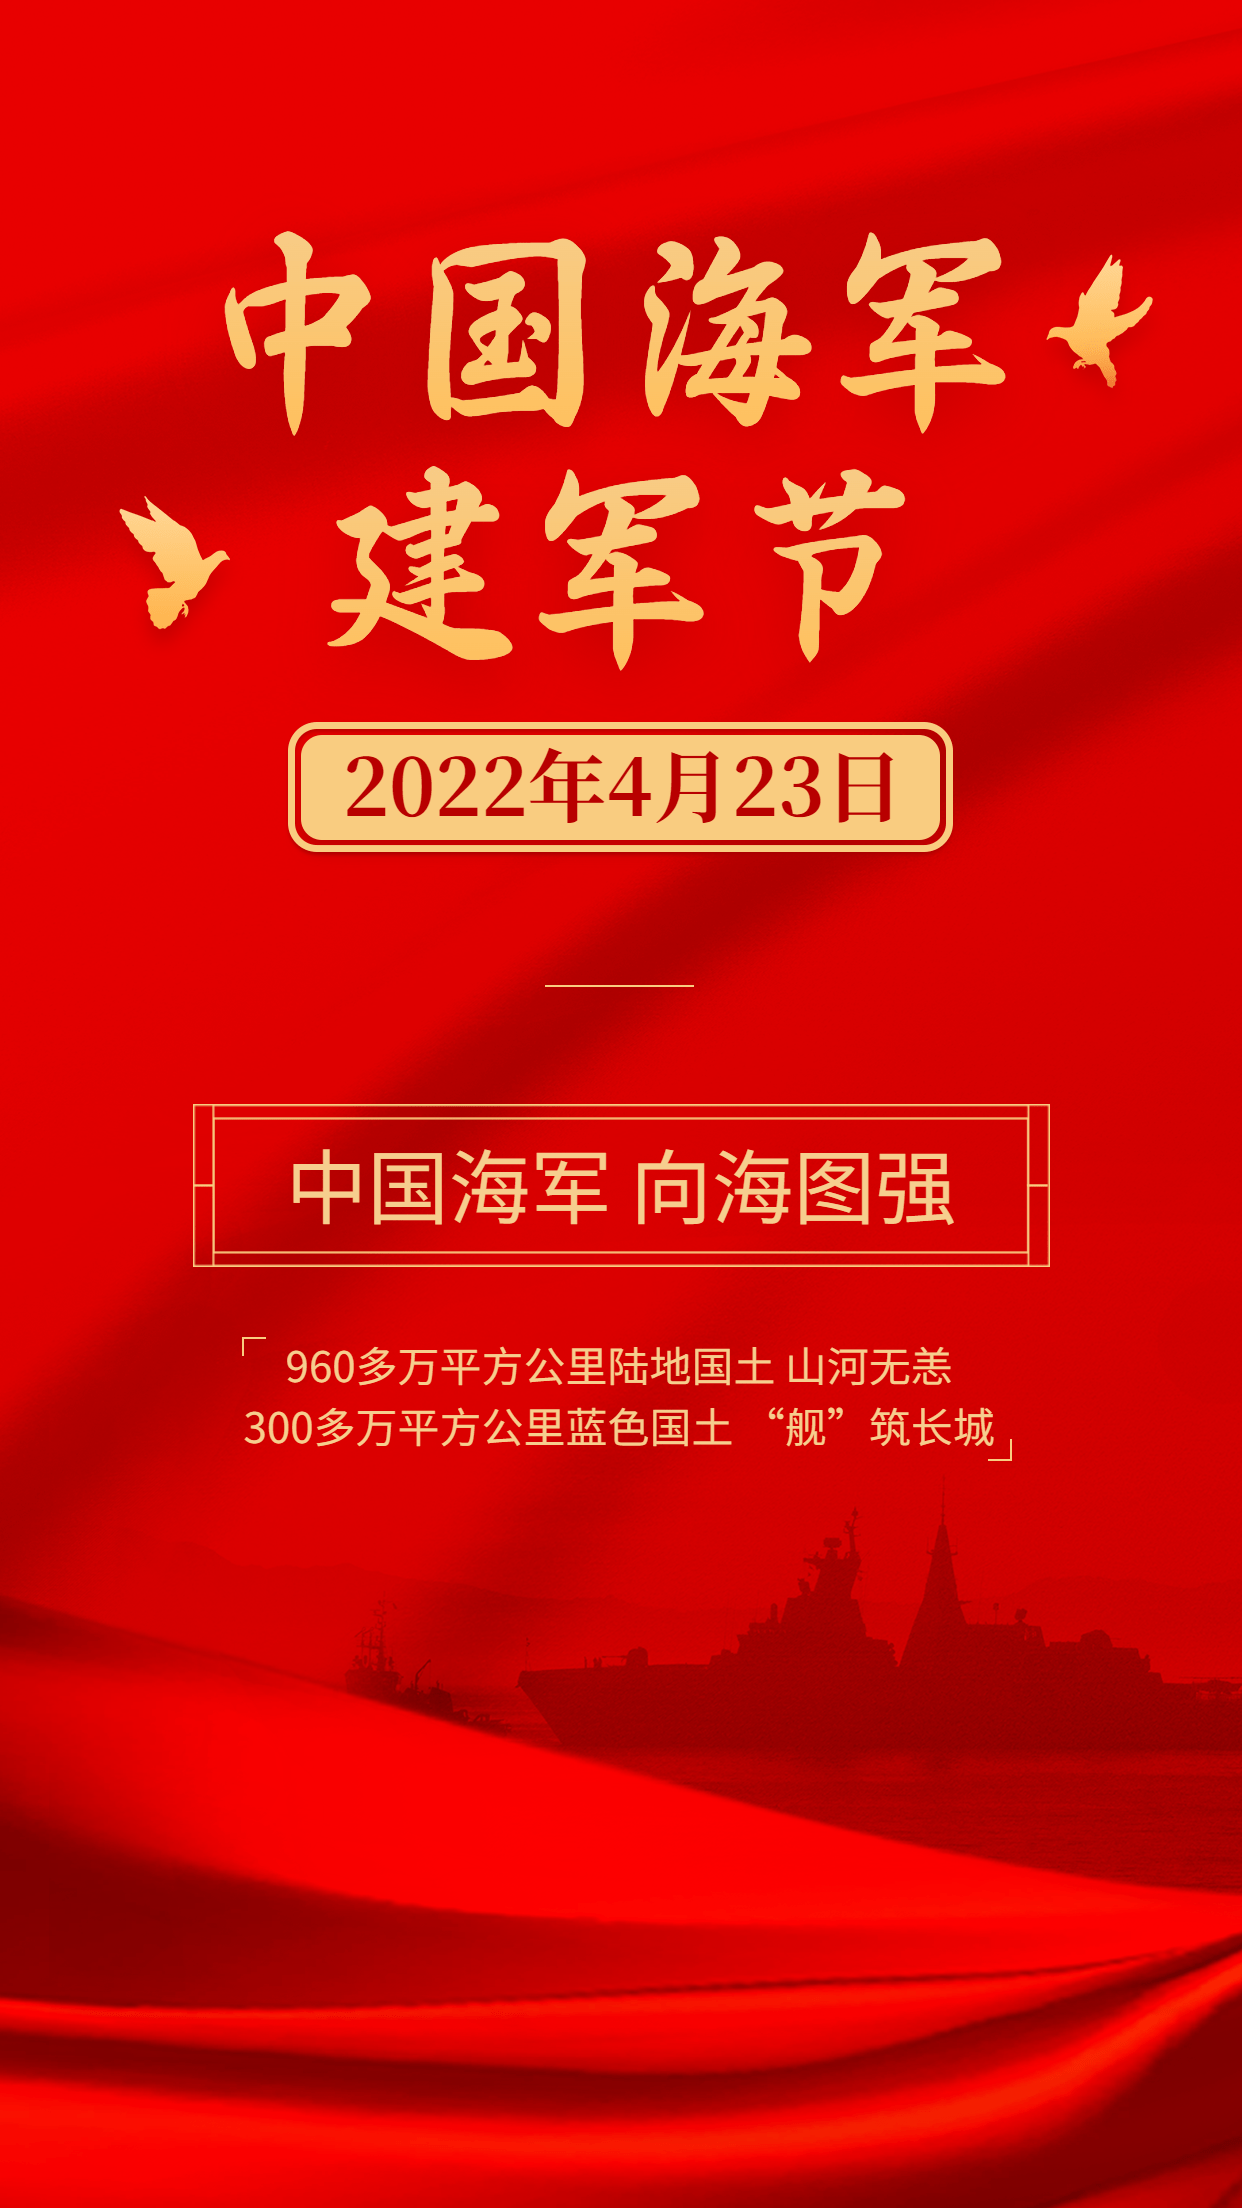 中国海军建军节节日宣传排版手机海报预览效果